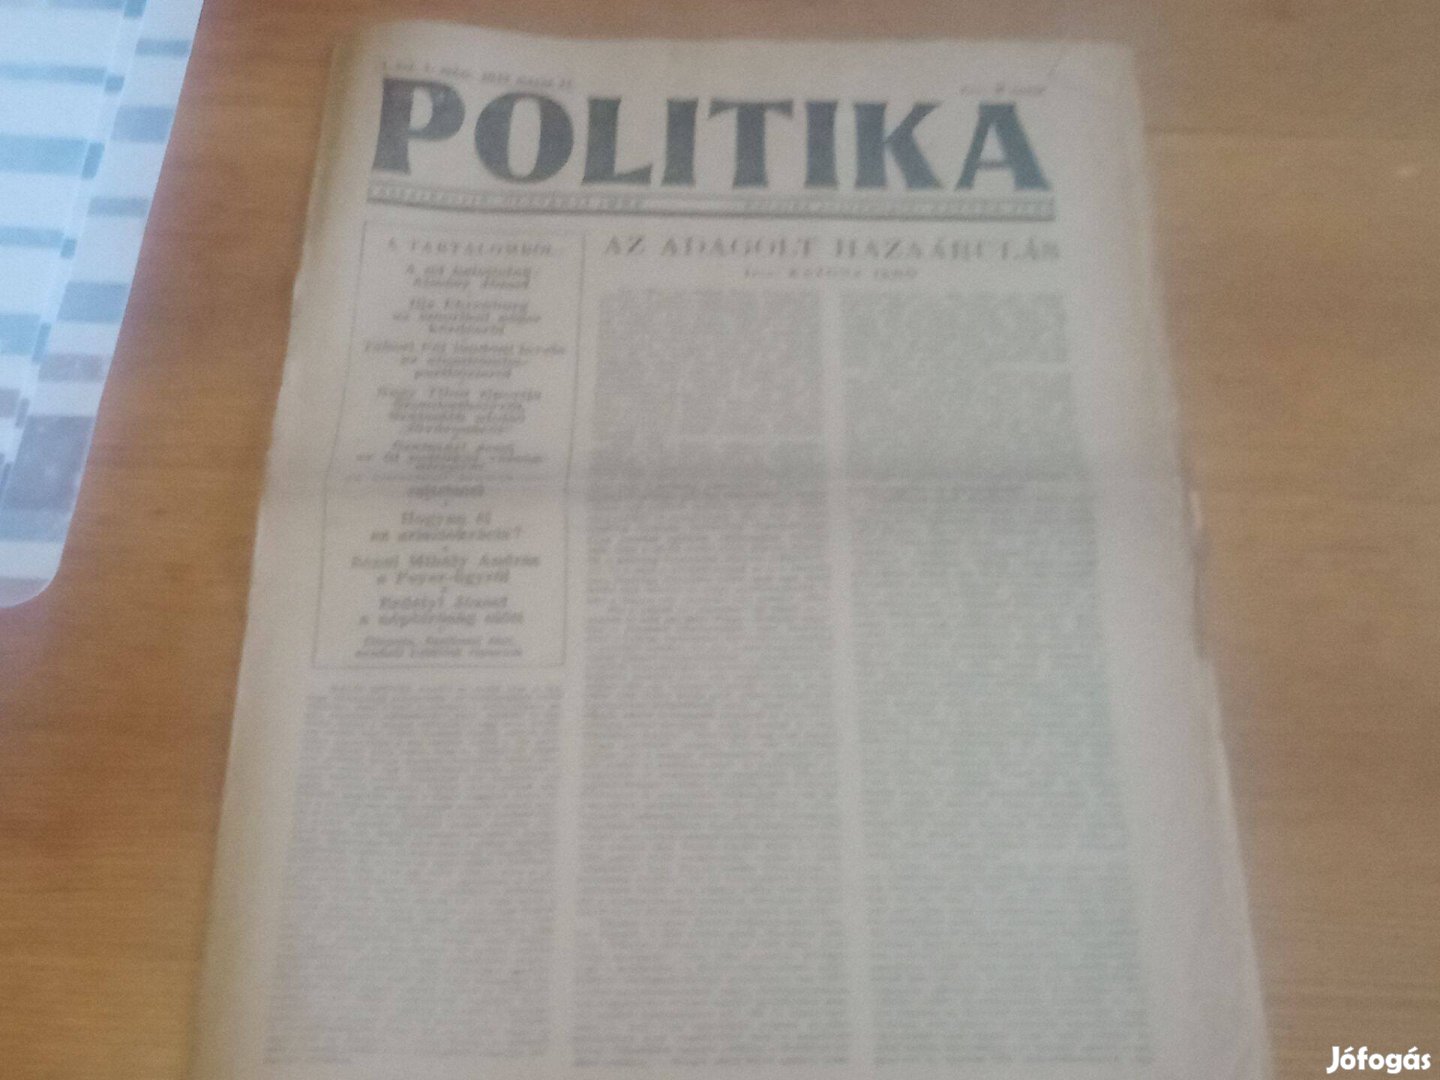 Politika 1947. május 17. hagyatékból 3000ft óbuda Politika 1947. május